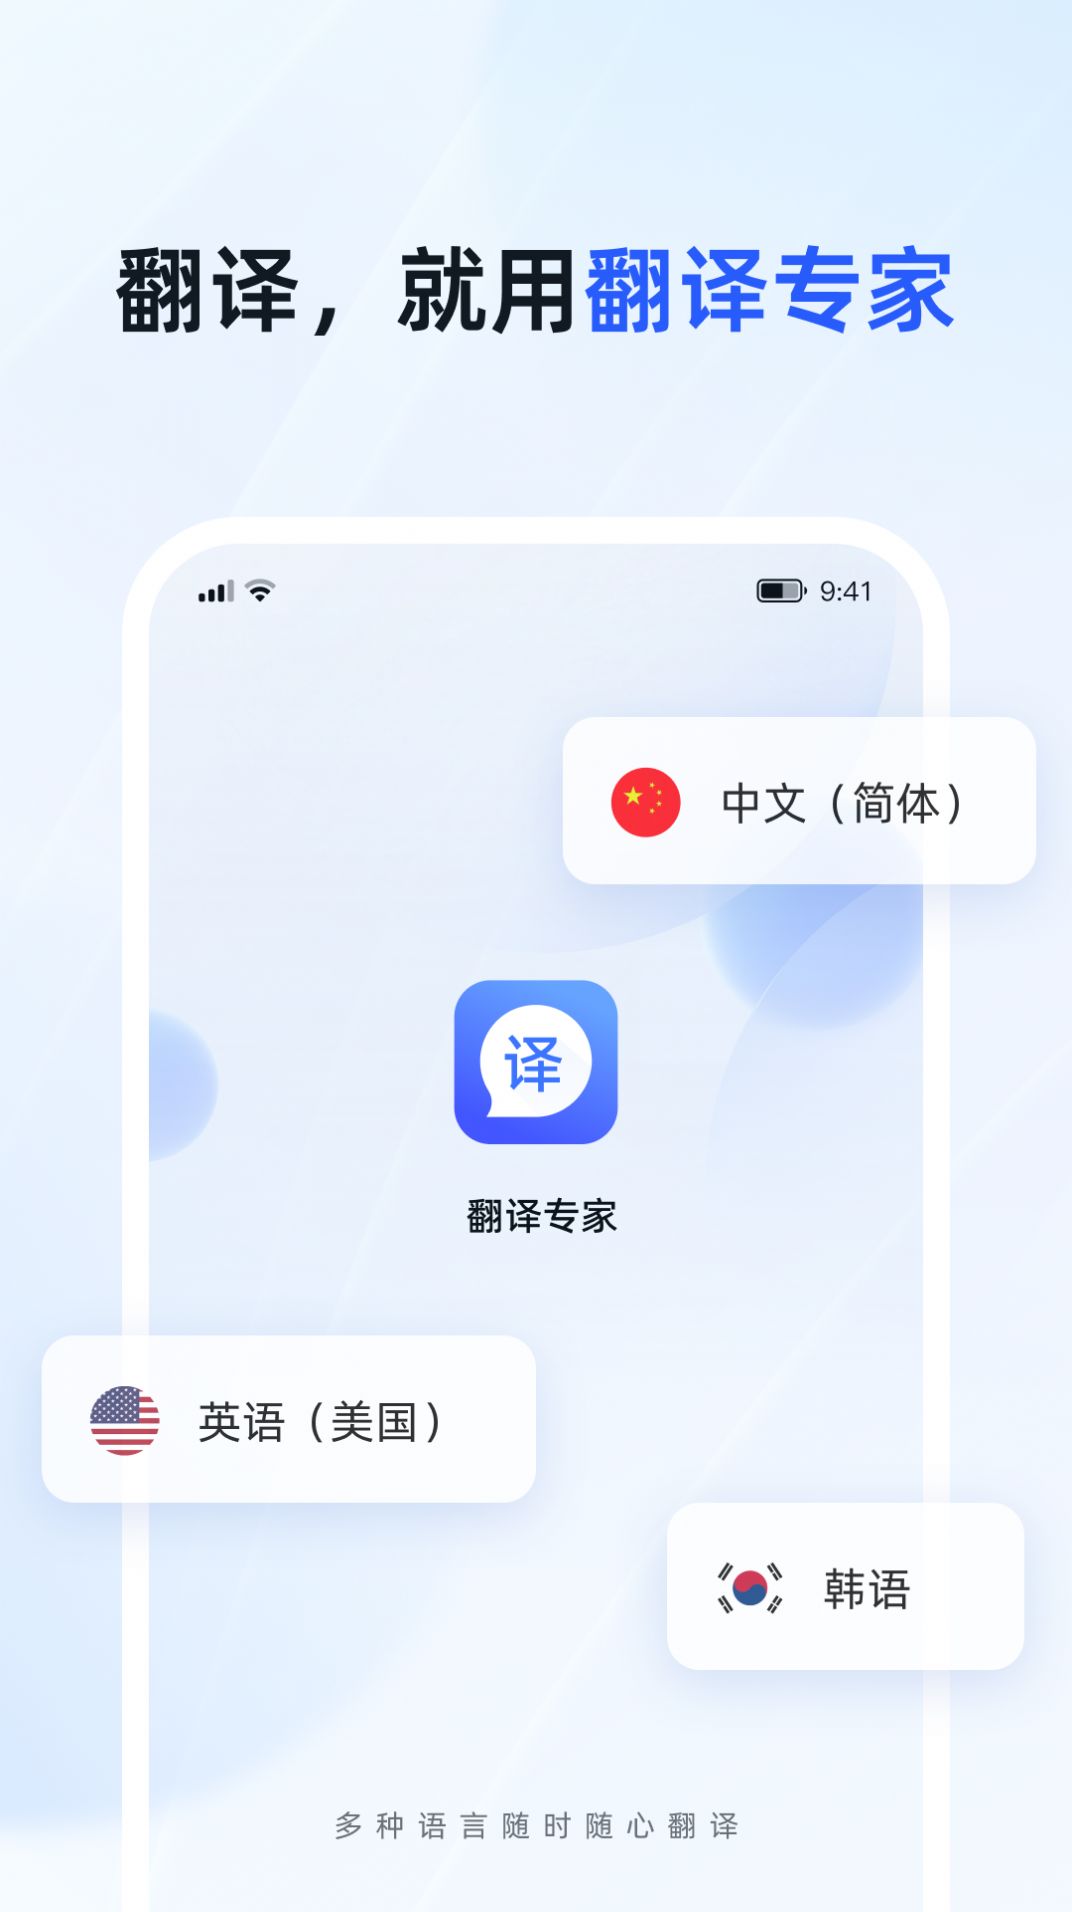 脉蜀翻译专家官方版app图片1